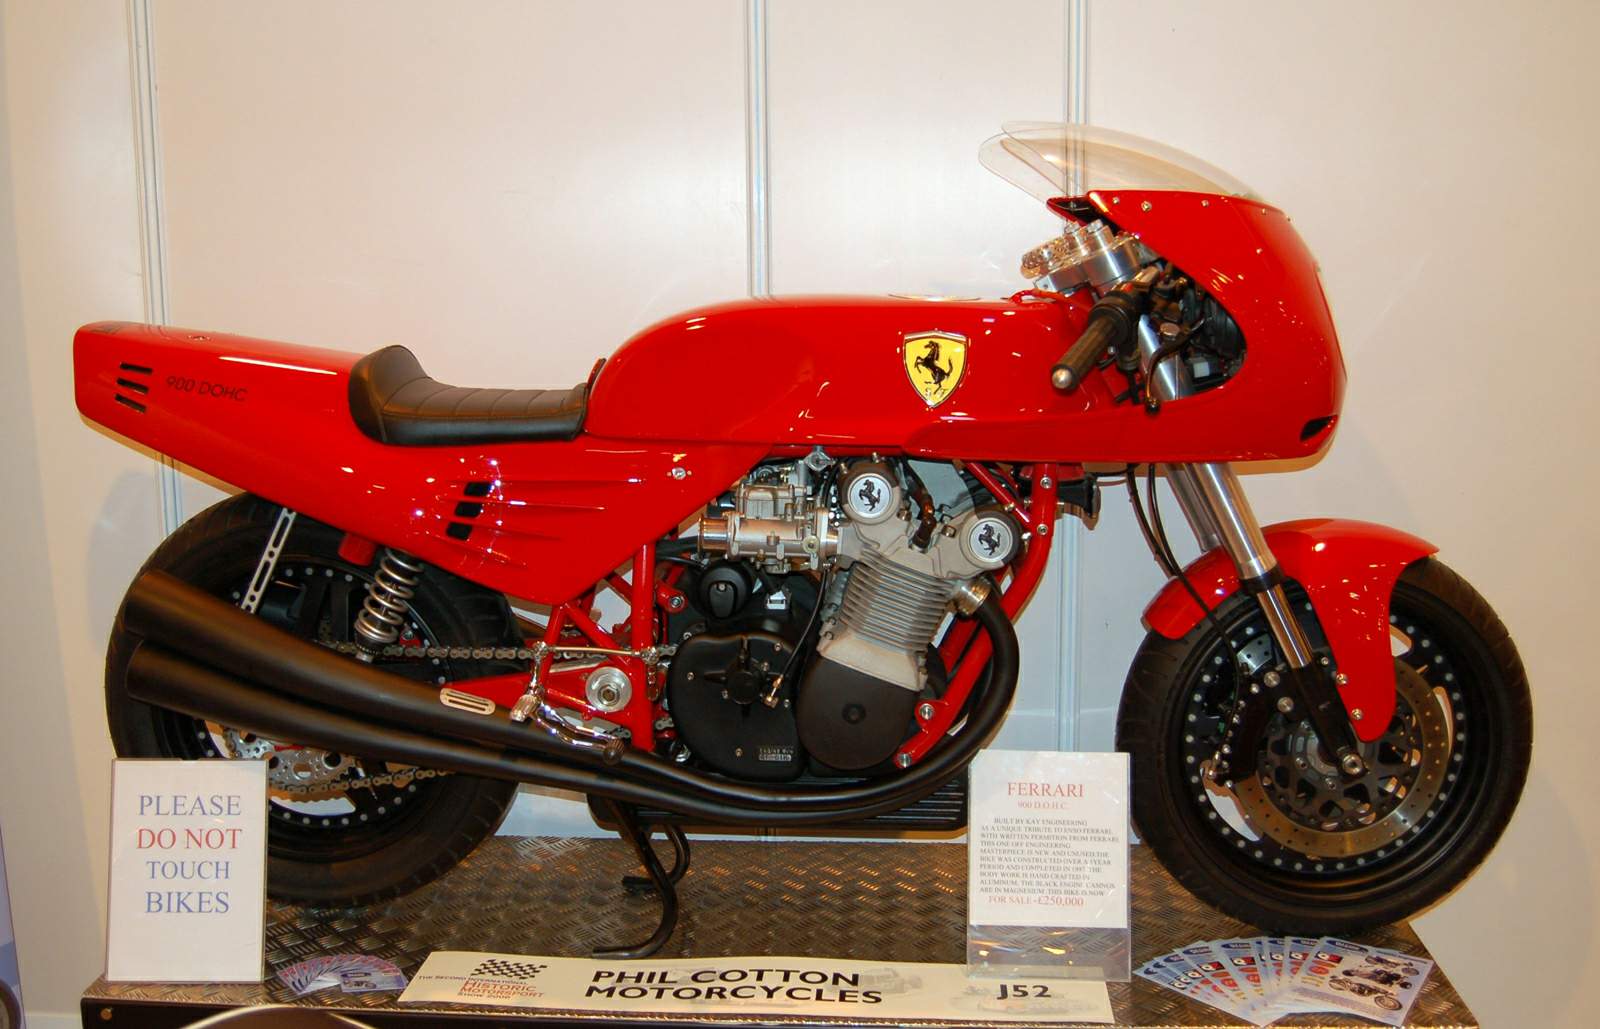 http://www.motorcyclespecs.co.za/Custom%20Bikes/Ferrari%20900%20%201.jpg